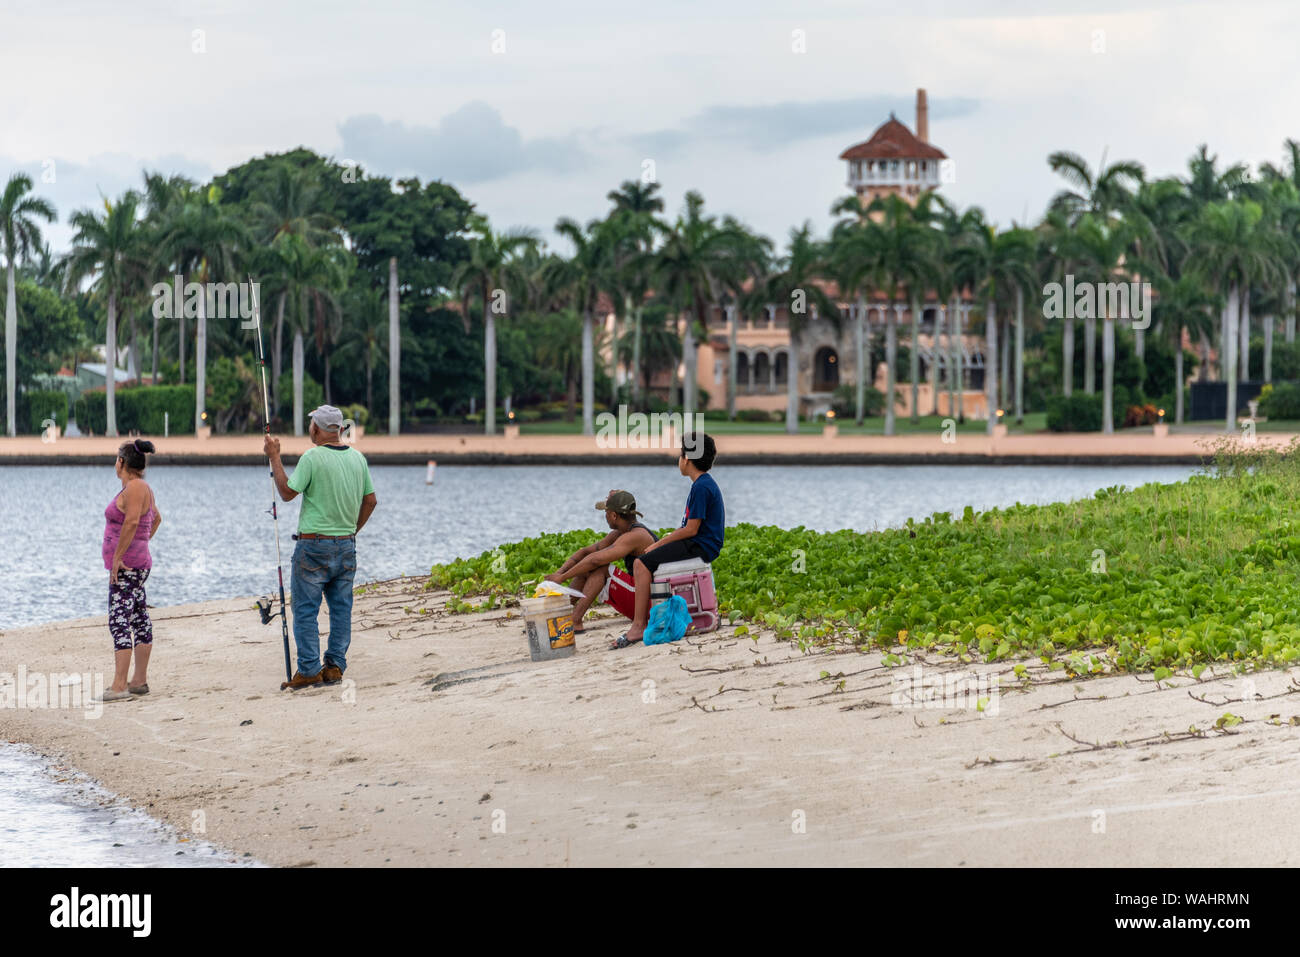 Famiglia di origine ispanica la pesca da un'isola nel lago vale la pena di laguna di fronte al presidente Donald Trump's Palm Beach mansion station wagon, Mar-a-Lago. (USA) Foto Stock